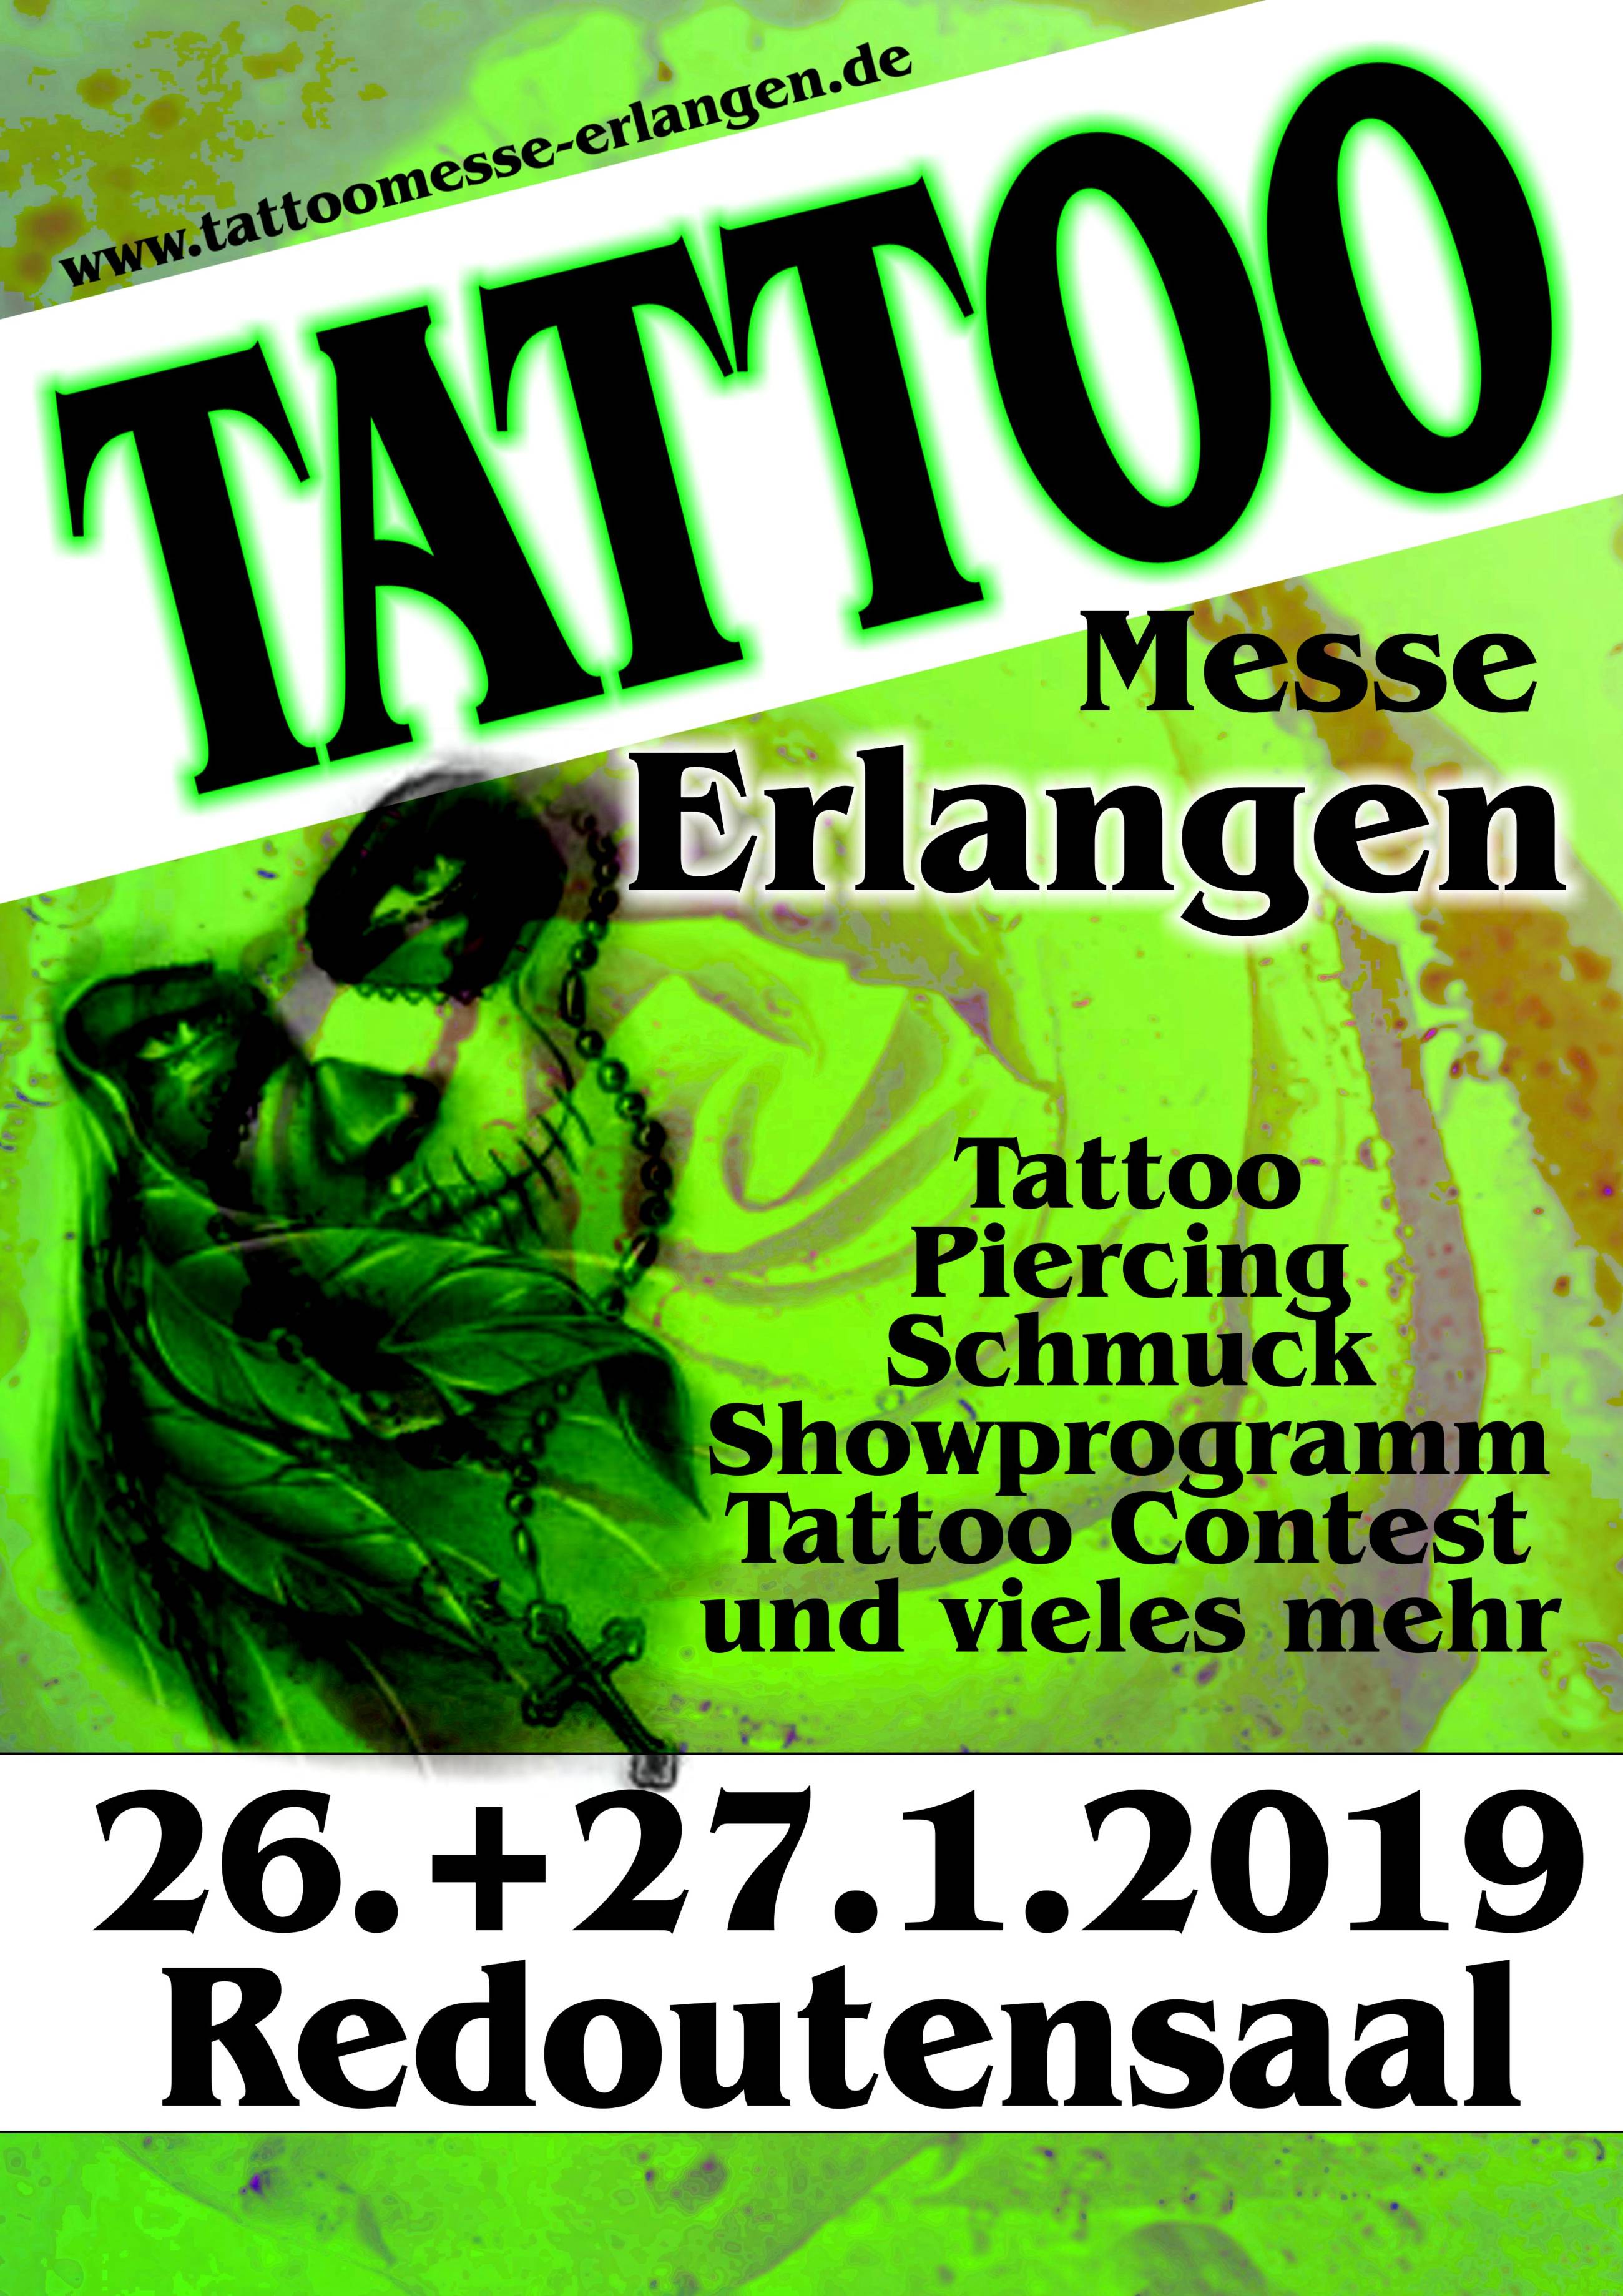 convention erlangen Tattoo